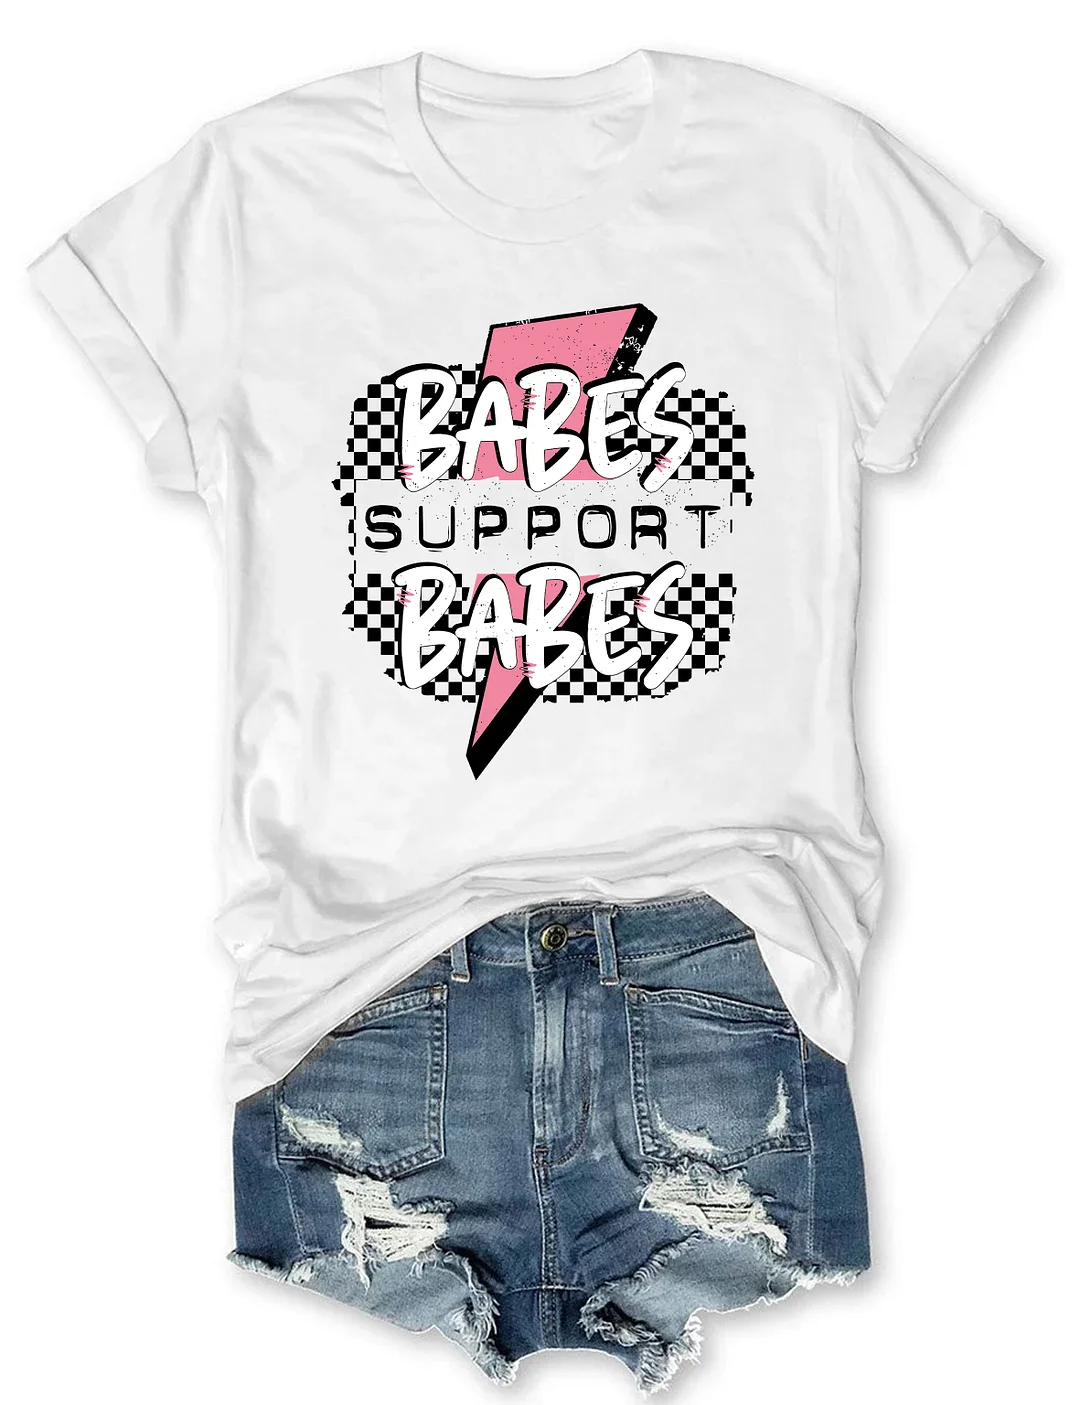 Babes Support Babes T-shirt